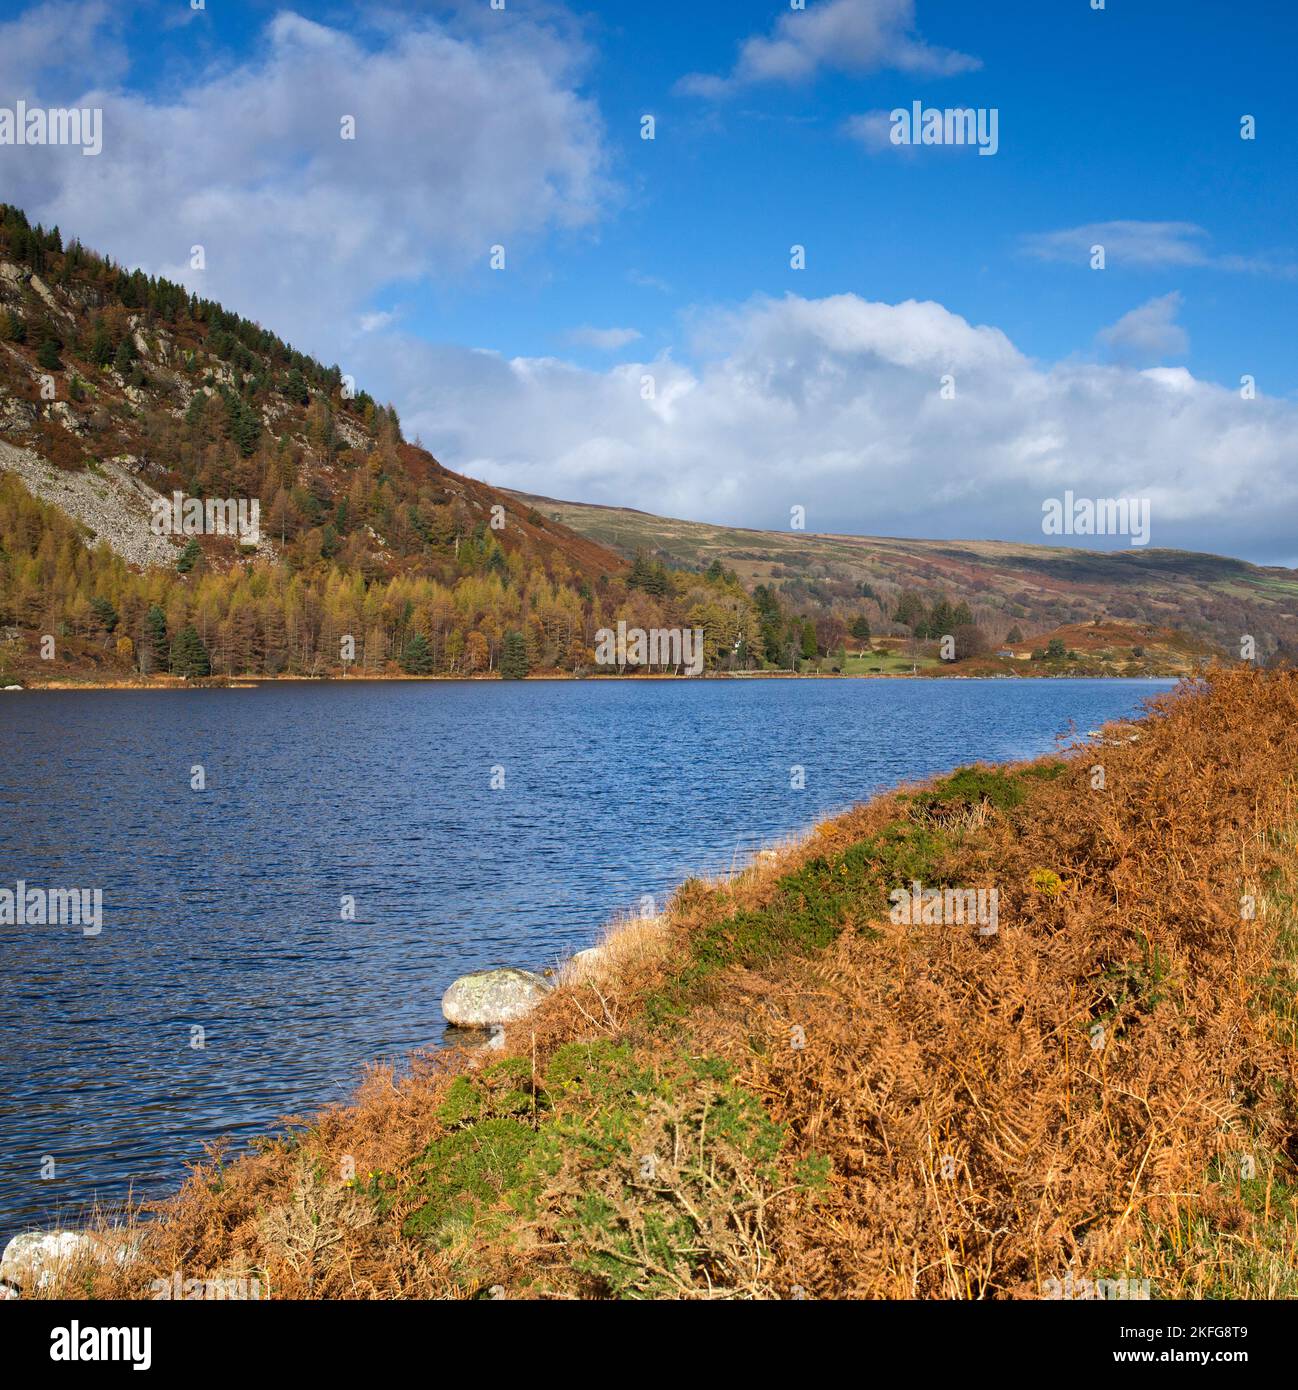 Nördliches Ende des Llyn Geirionydd Sees im Herbst in der Nähe von Trefriw Snowdonia National Park Gwynedd North Wales Großbritannien, Spätherbst. Stockfoto